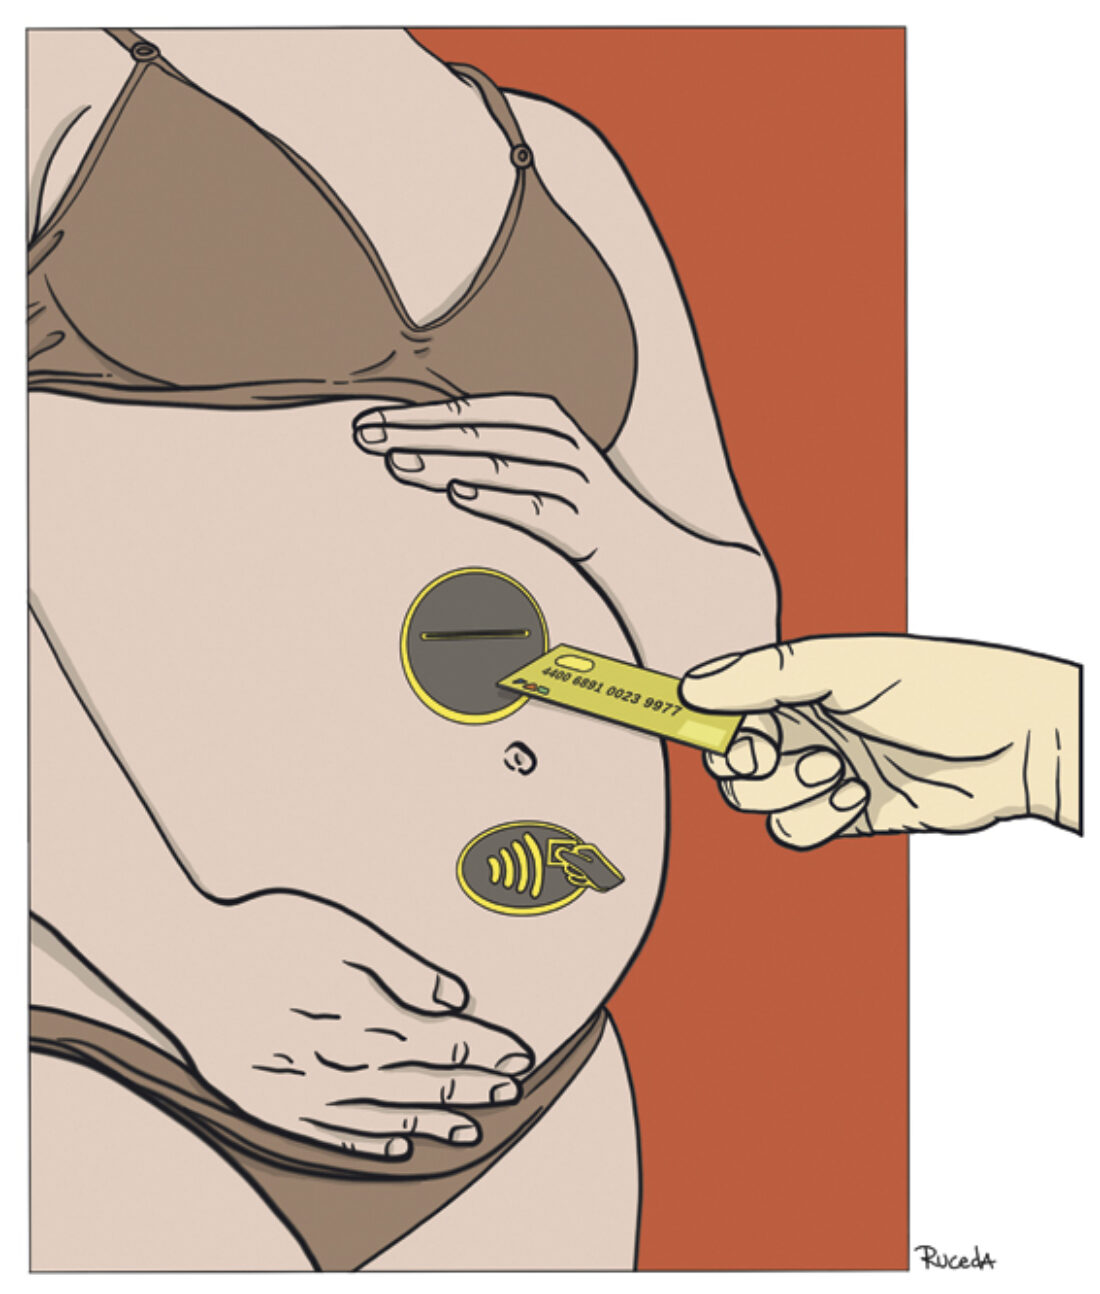 Maternidad subrogada: Una forma de violencia contra las mujeres